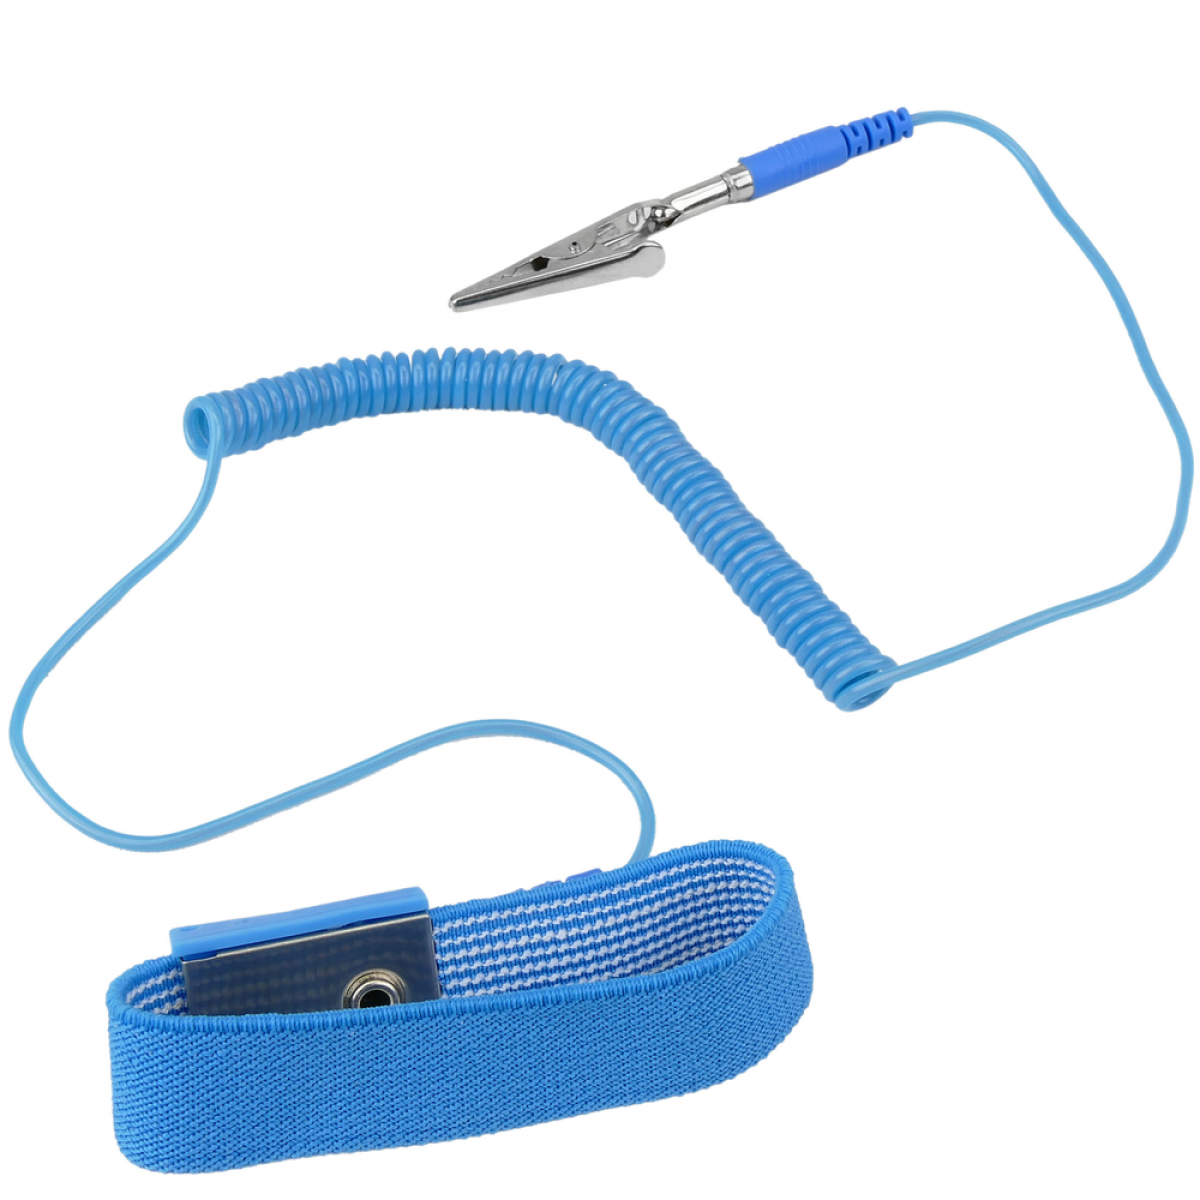 Bematik - Bracelet antistatique pour réparations contre les décharges d'électricité statique 5-pack - Bracelet connecté